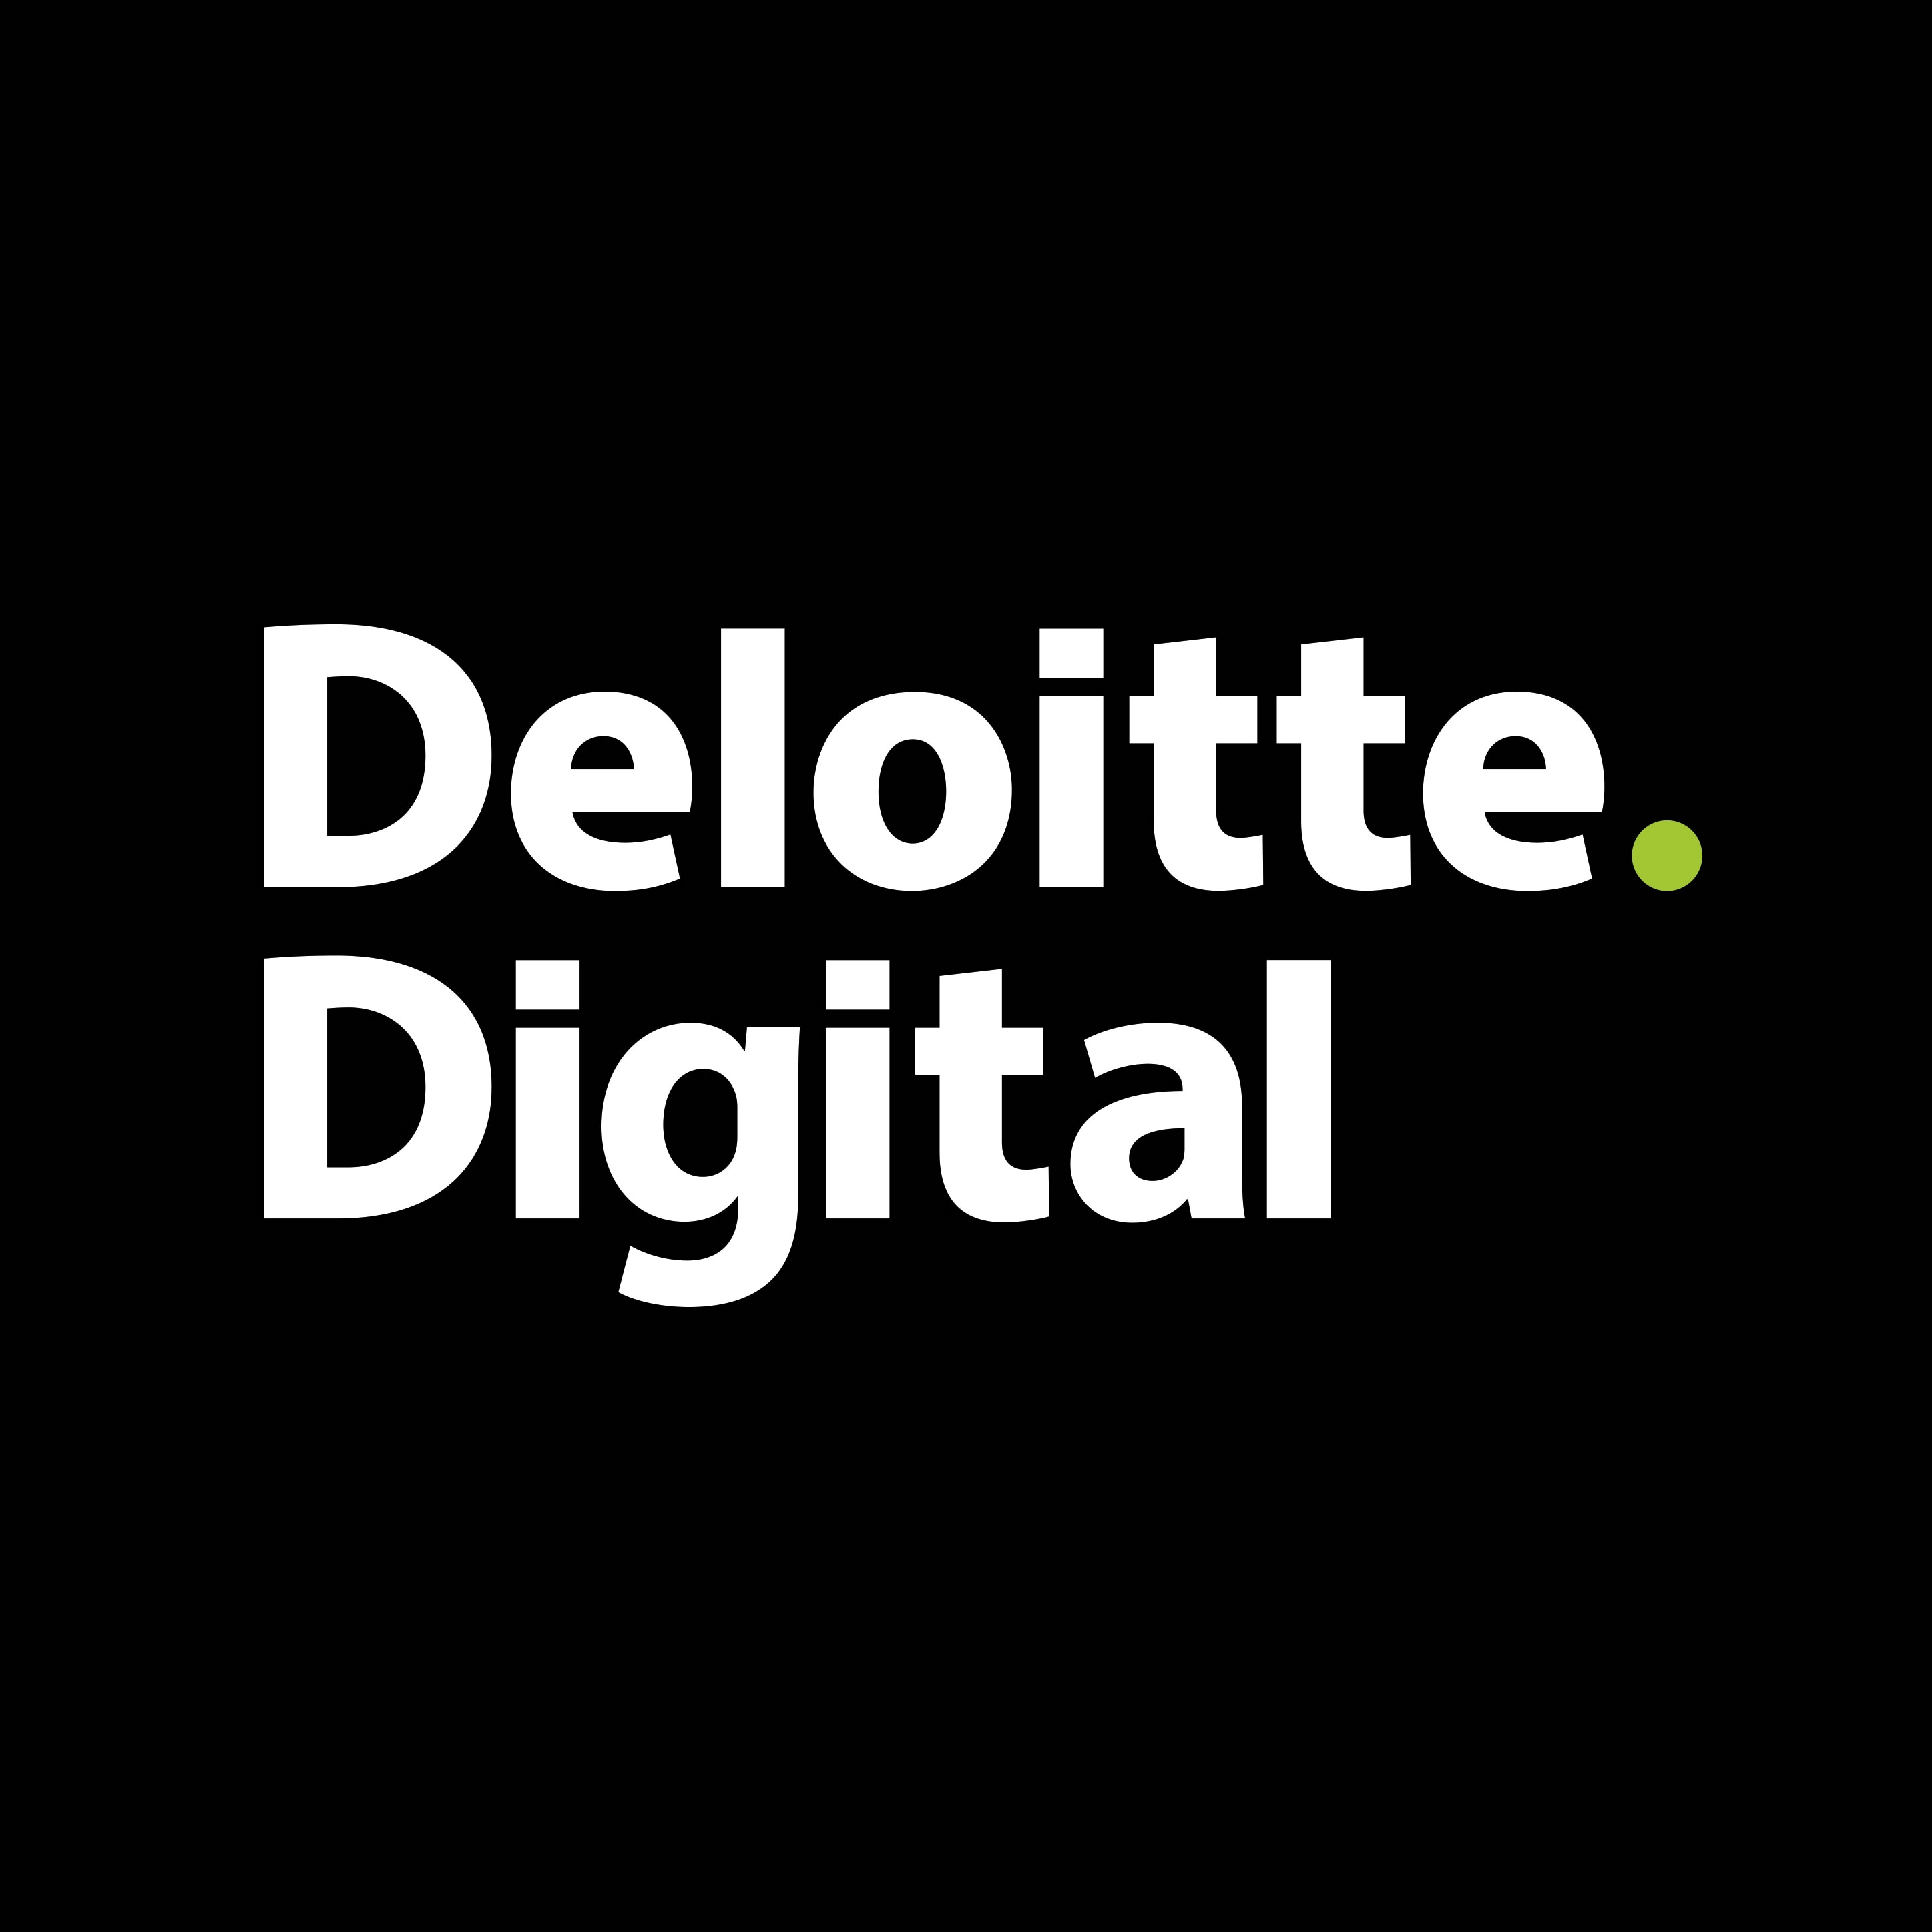 Deloitte Digital Logo - Deloitte launches Deloitte Digital in Luxembourg | Deloitte ...